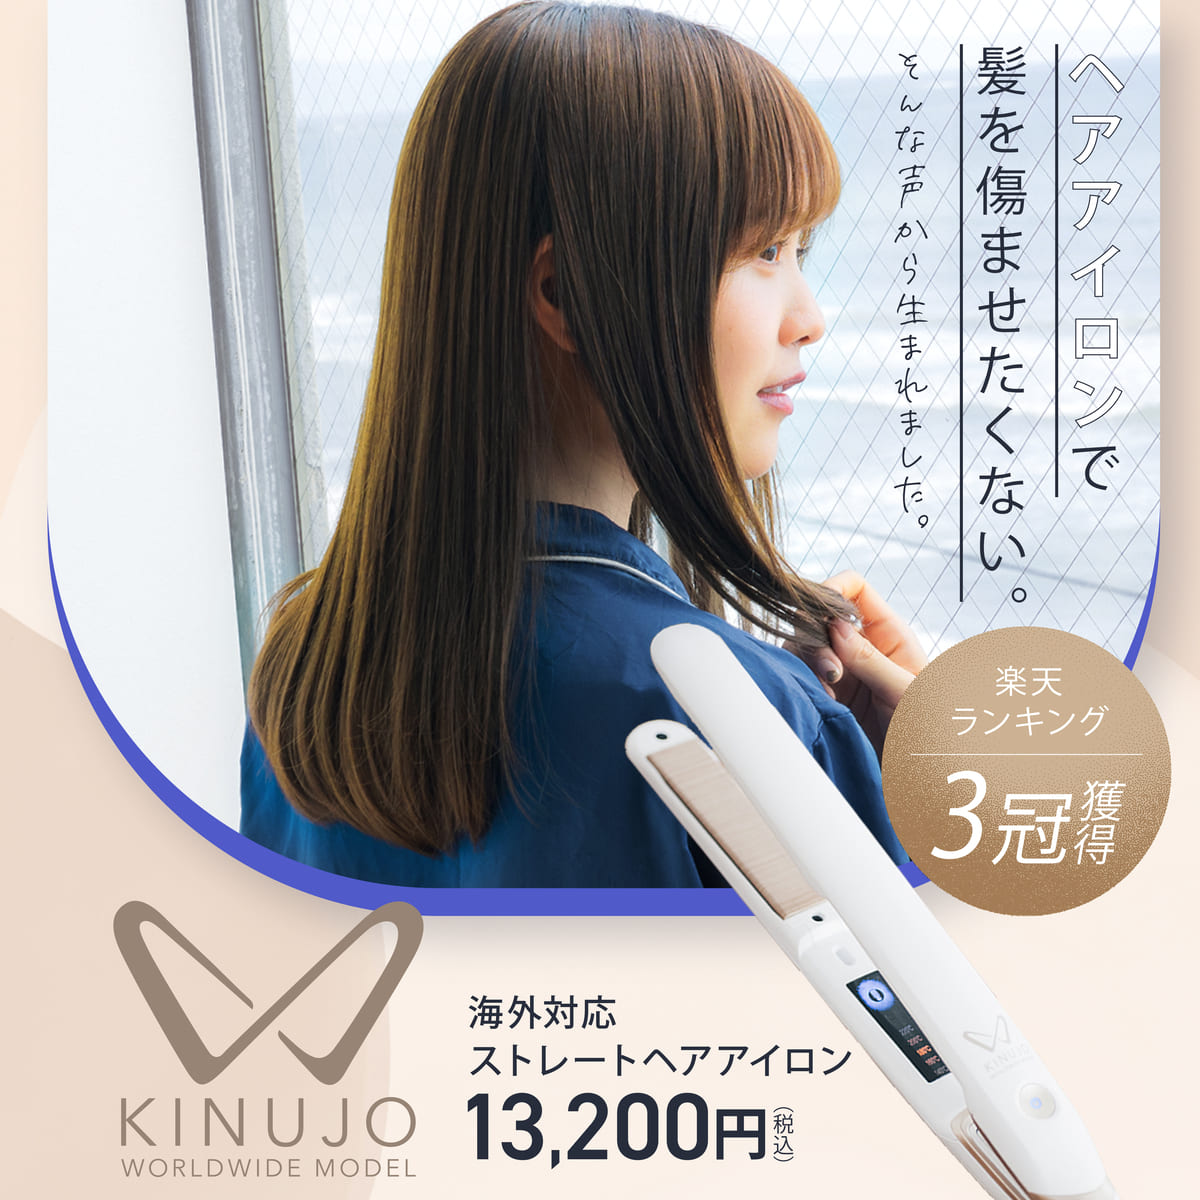 【公式】 KINUJO W-worldwide model- キヌージョワールド 絹女 海外 ヘアアイロン ストレート アイロン 220℃ プロ仕様 シルクプレート 時短